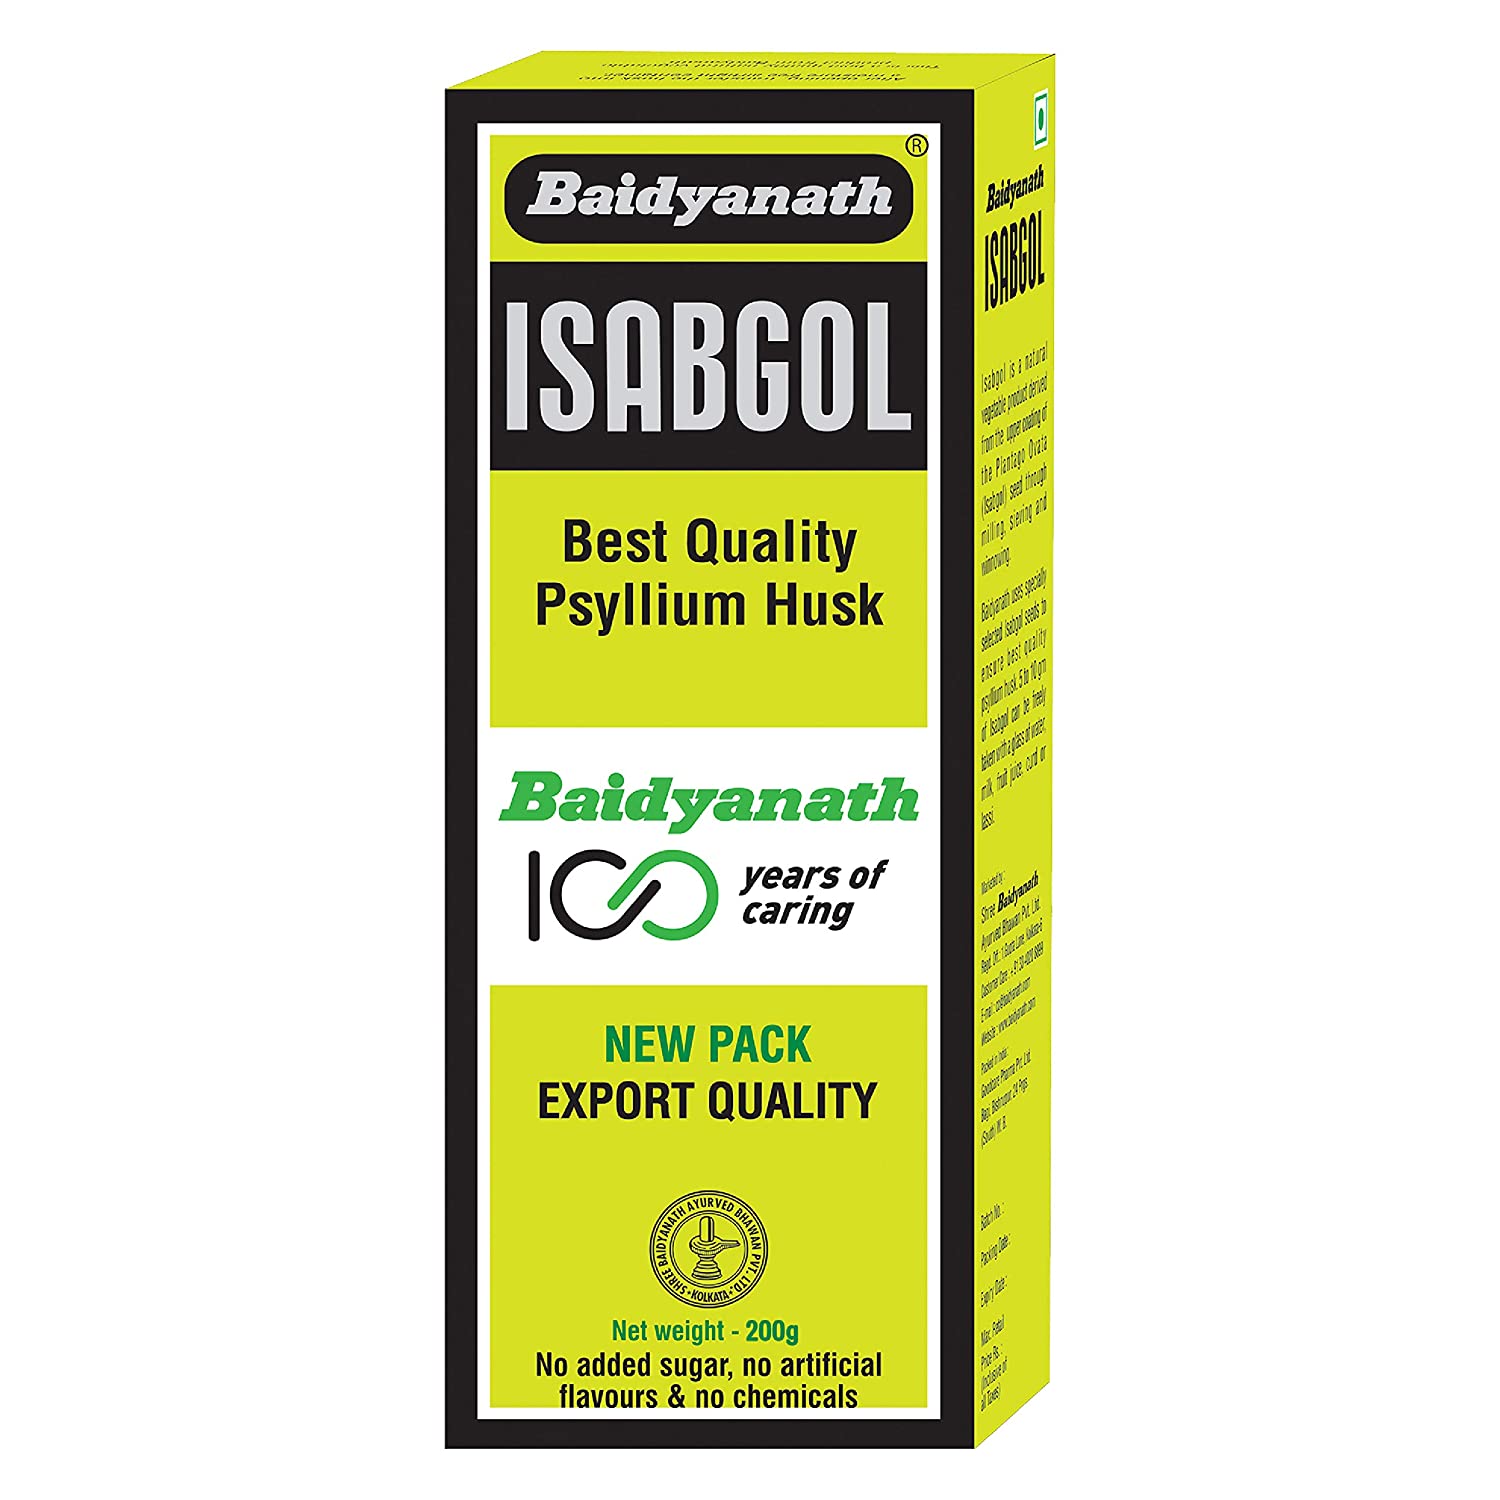 Baidyanath Isabgol - Psyllium Husk Powder made from Premium Isabgol Seeds - 200gm